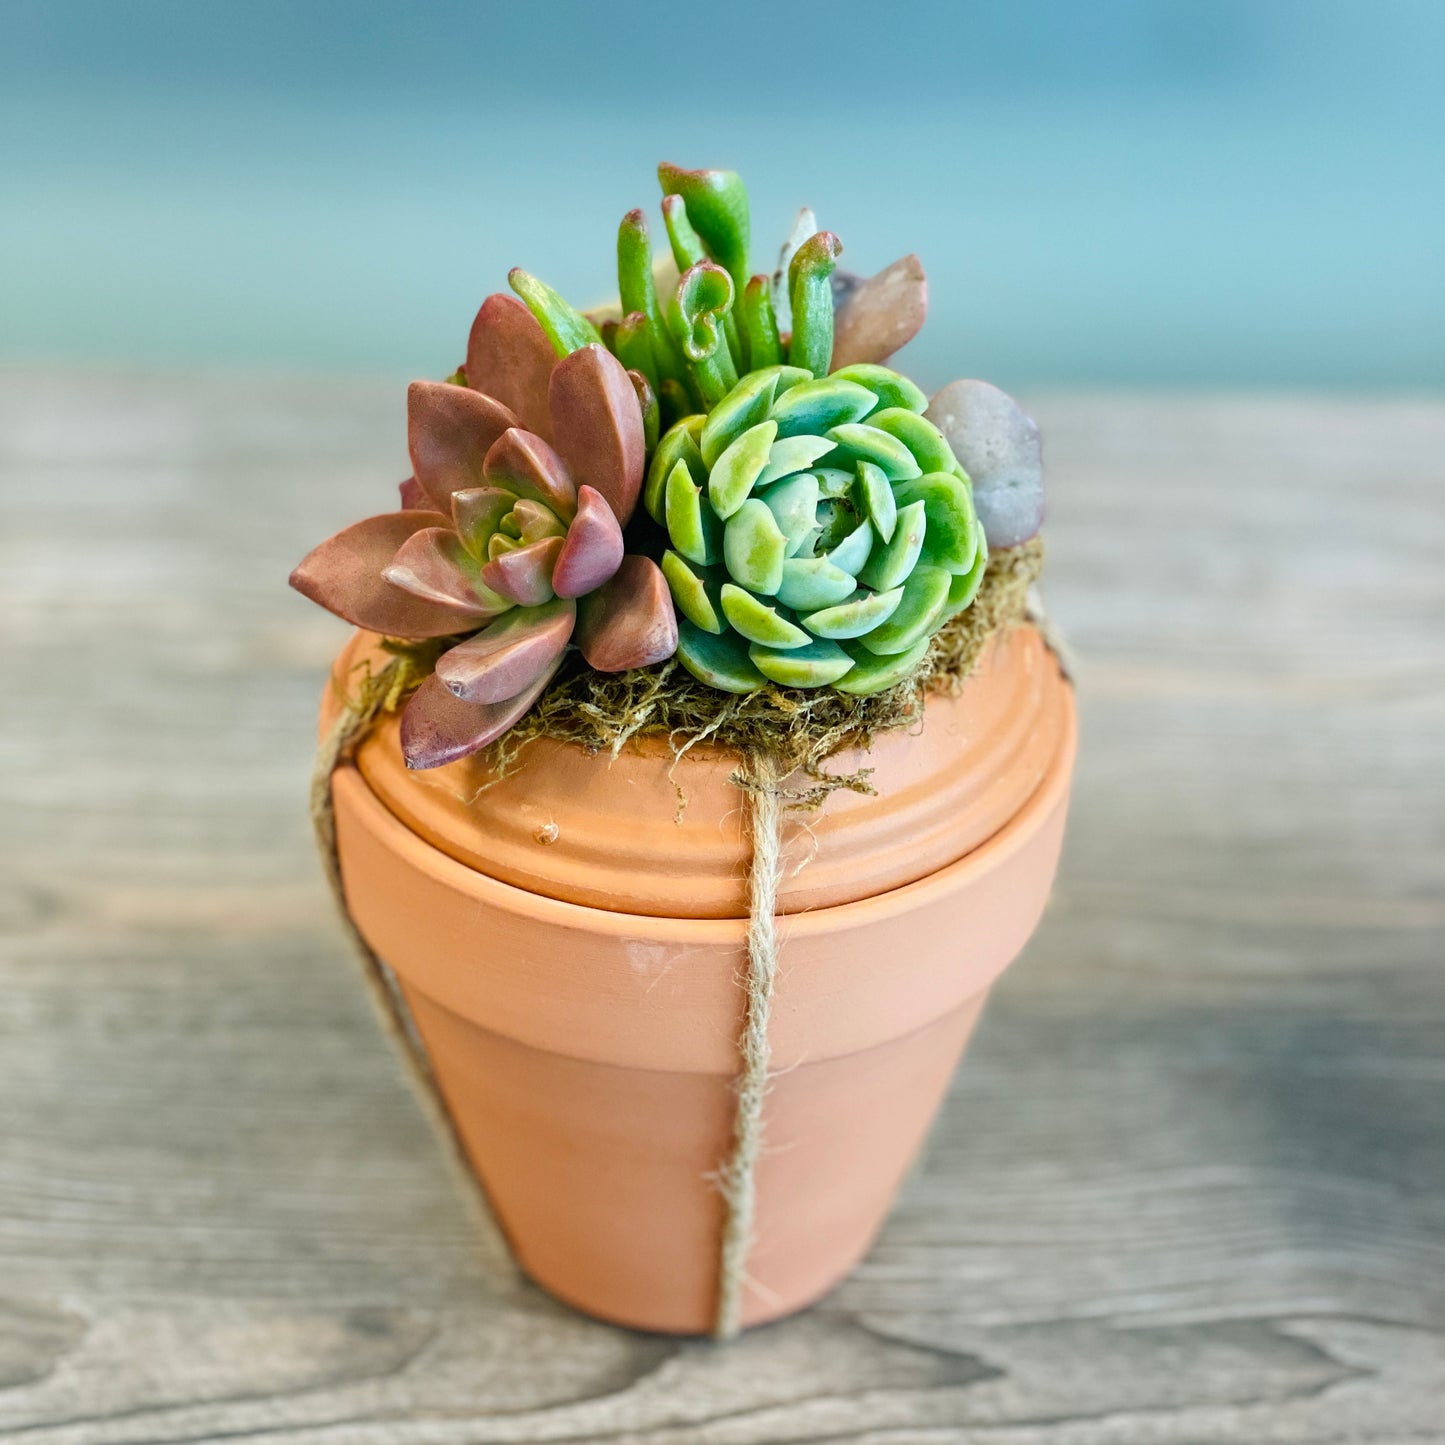 DIY Succulent Surprise Gift Pot